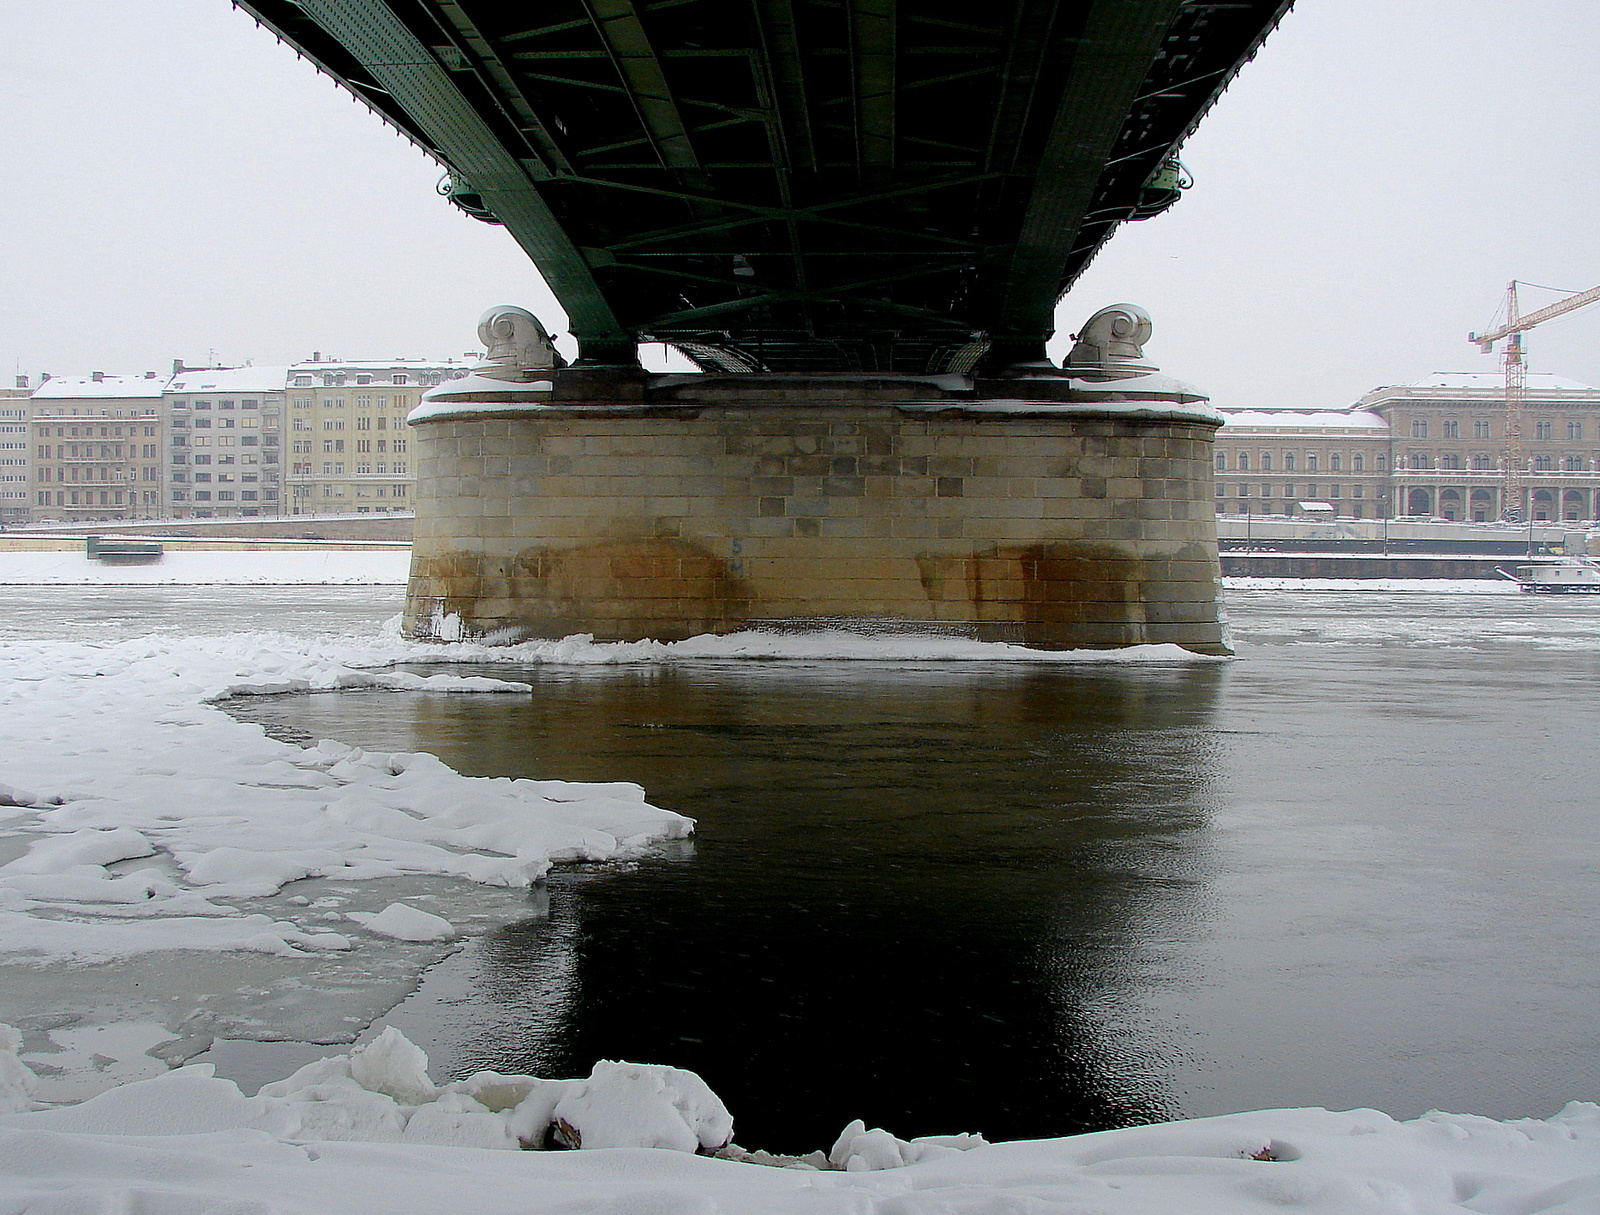 híd alatt